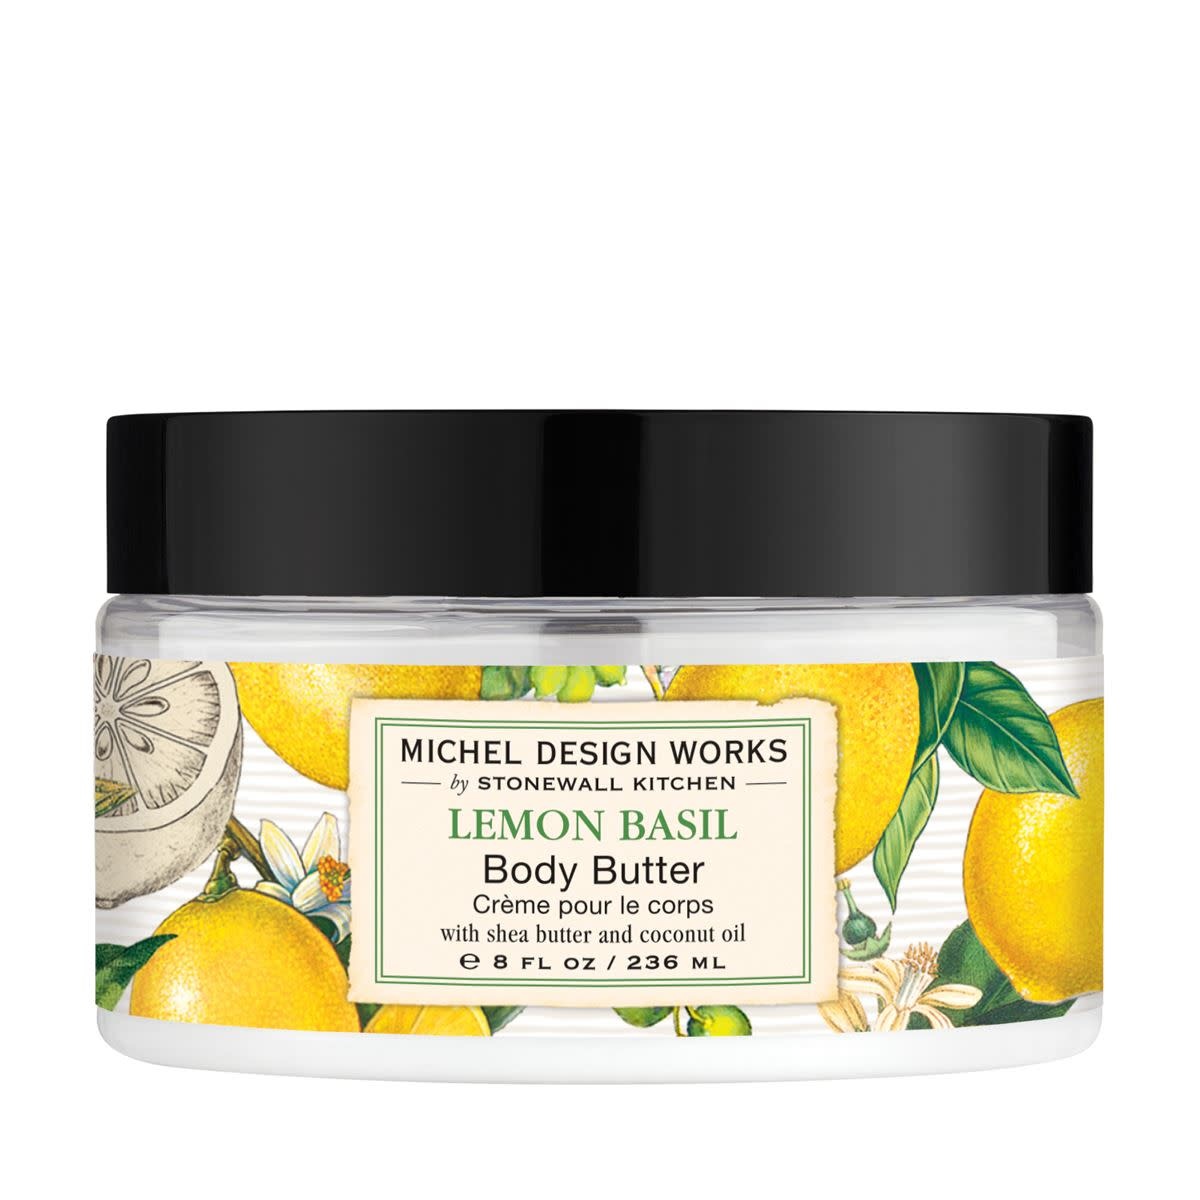 Michel Design Works Lemon Basil Body Butter